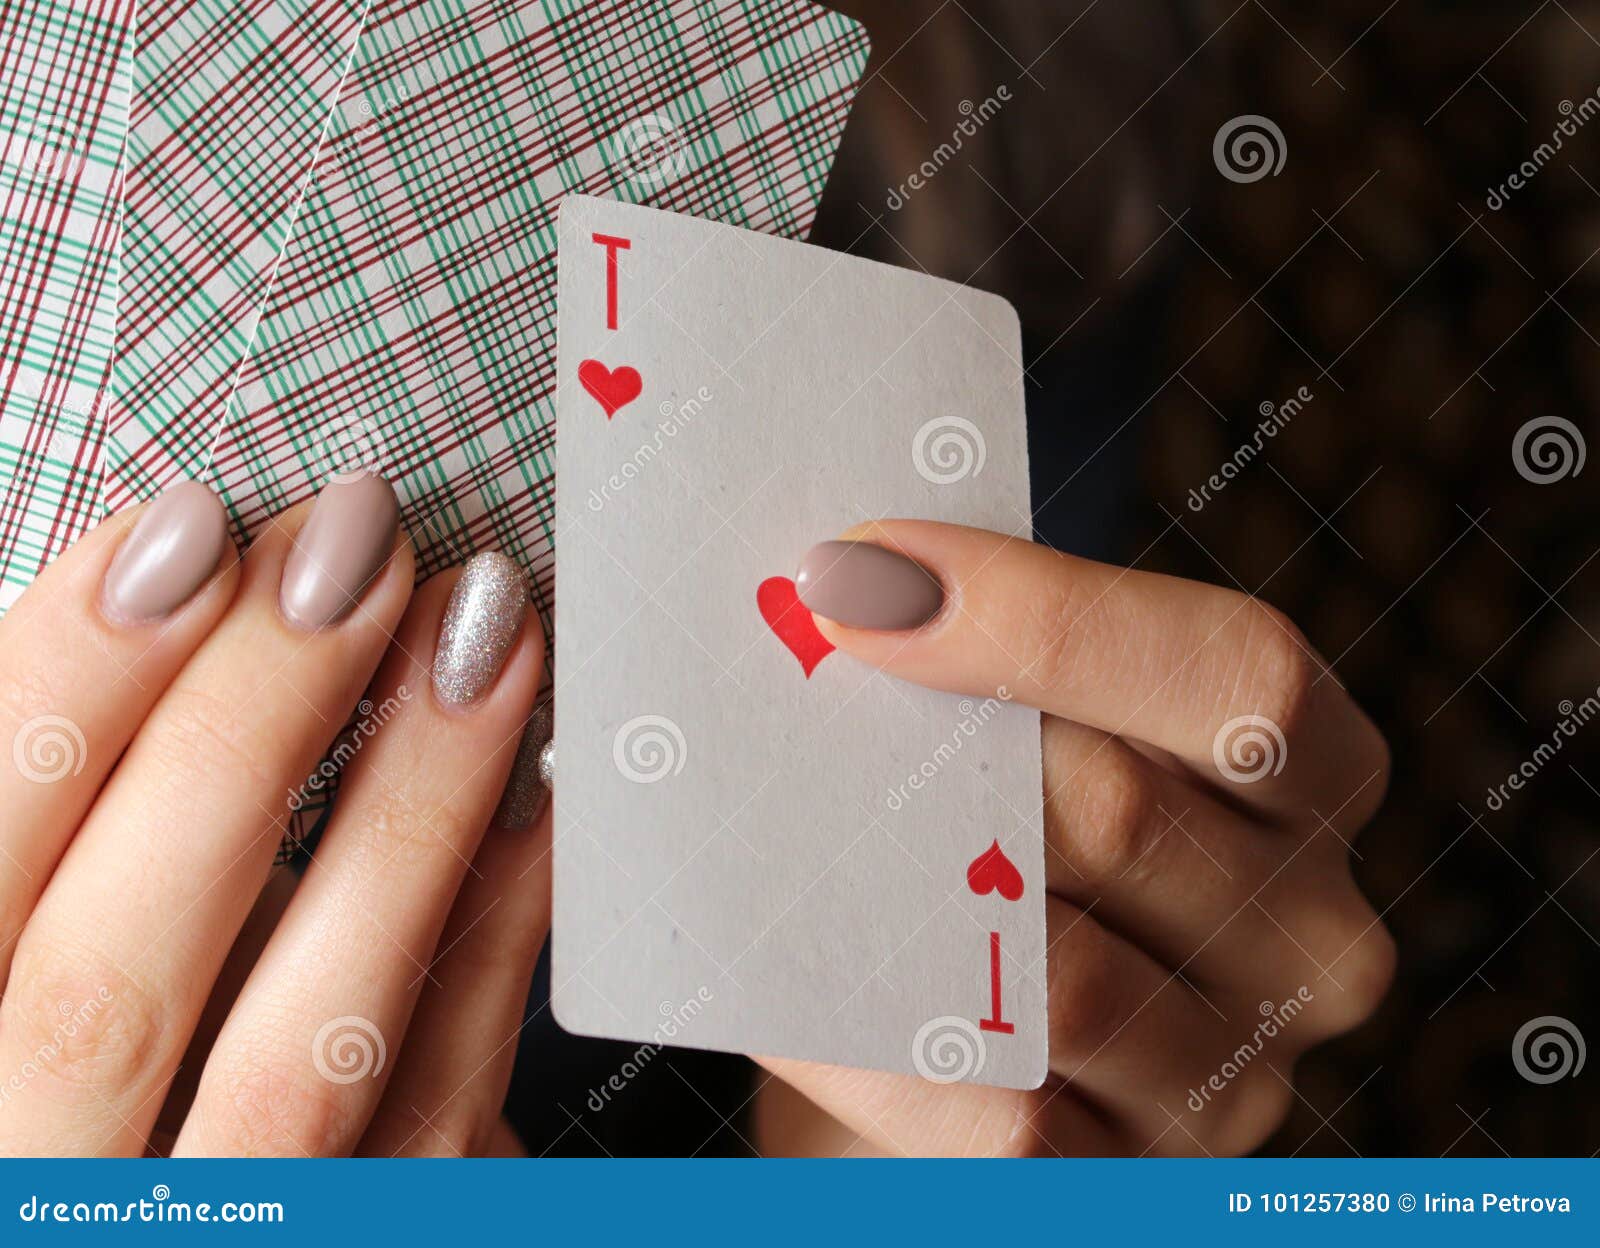 Играть с девушкой в карты на что i боевые карты играть бесплатно